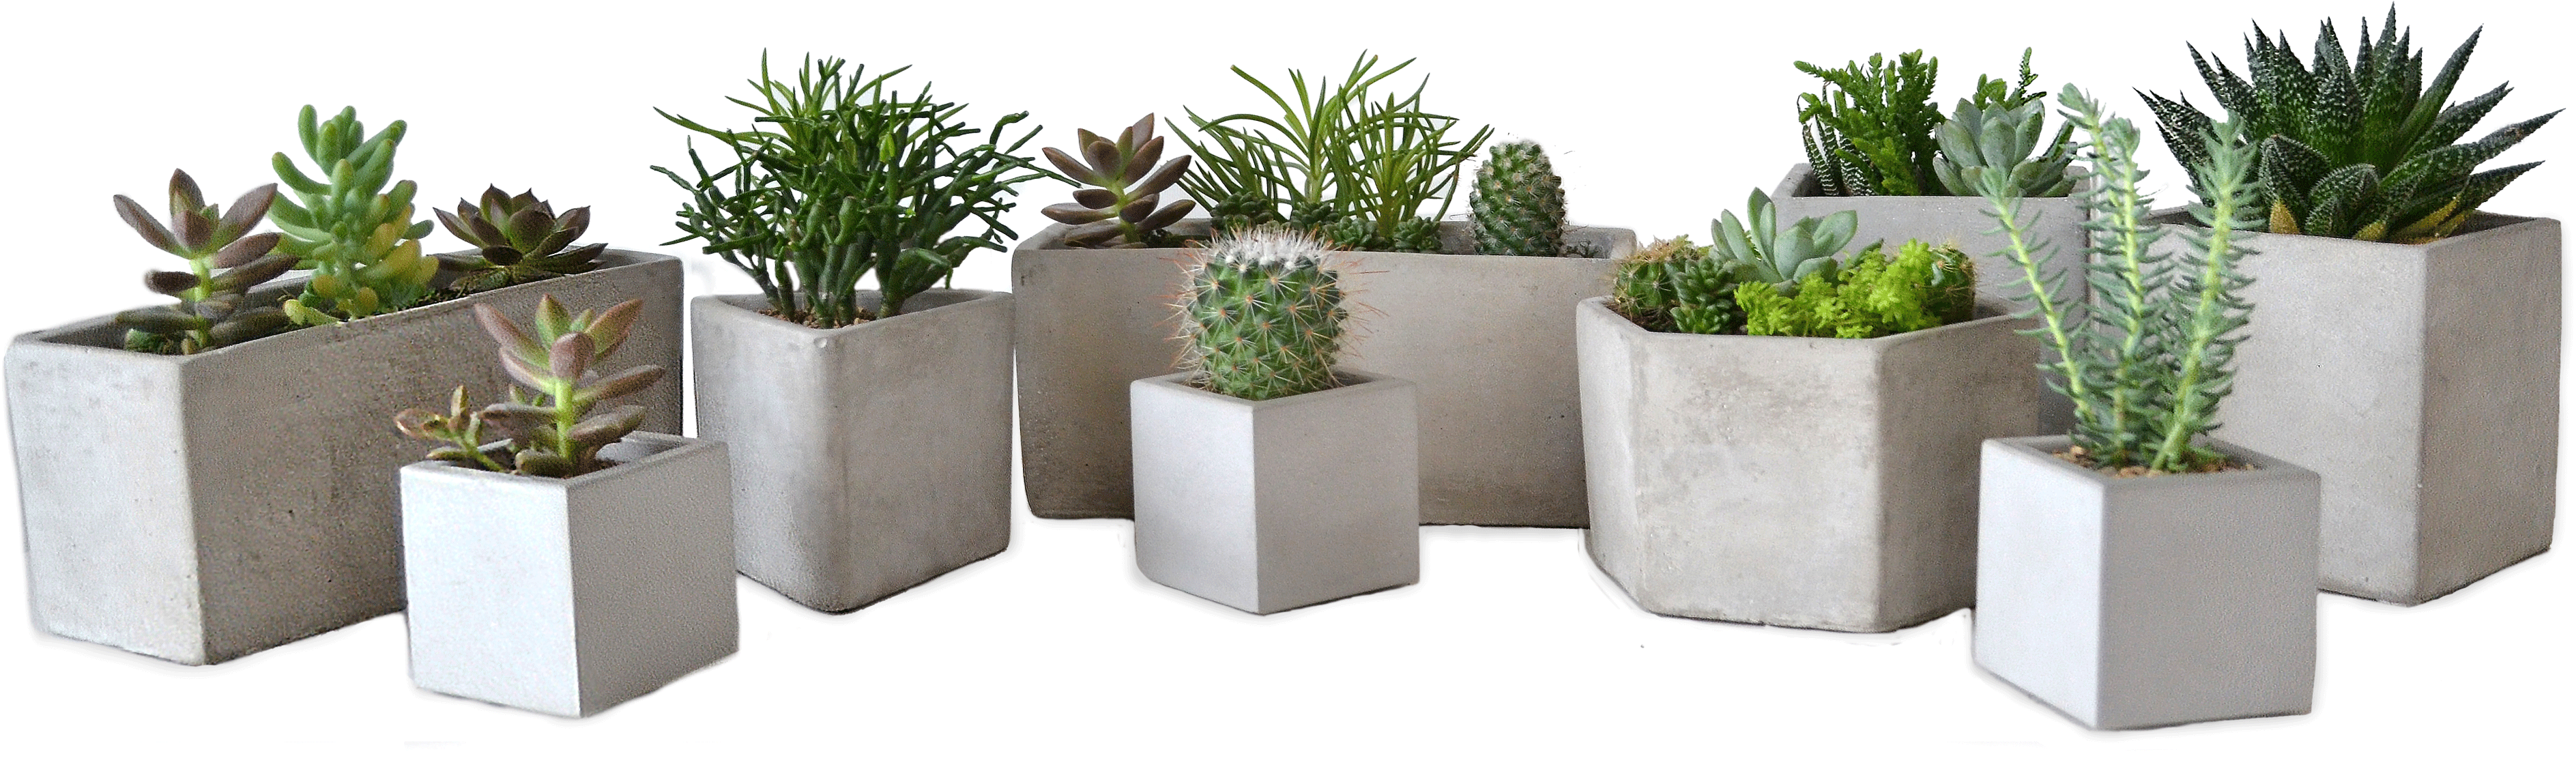 Assorted Succulentsin Concrete Planters PNG